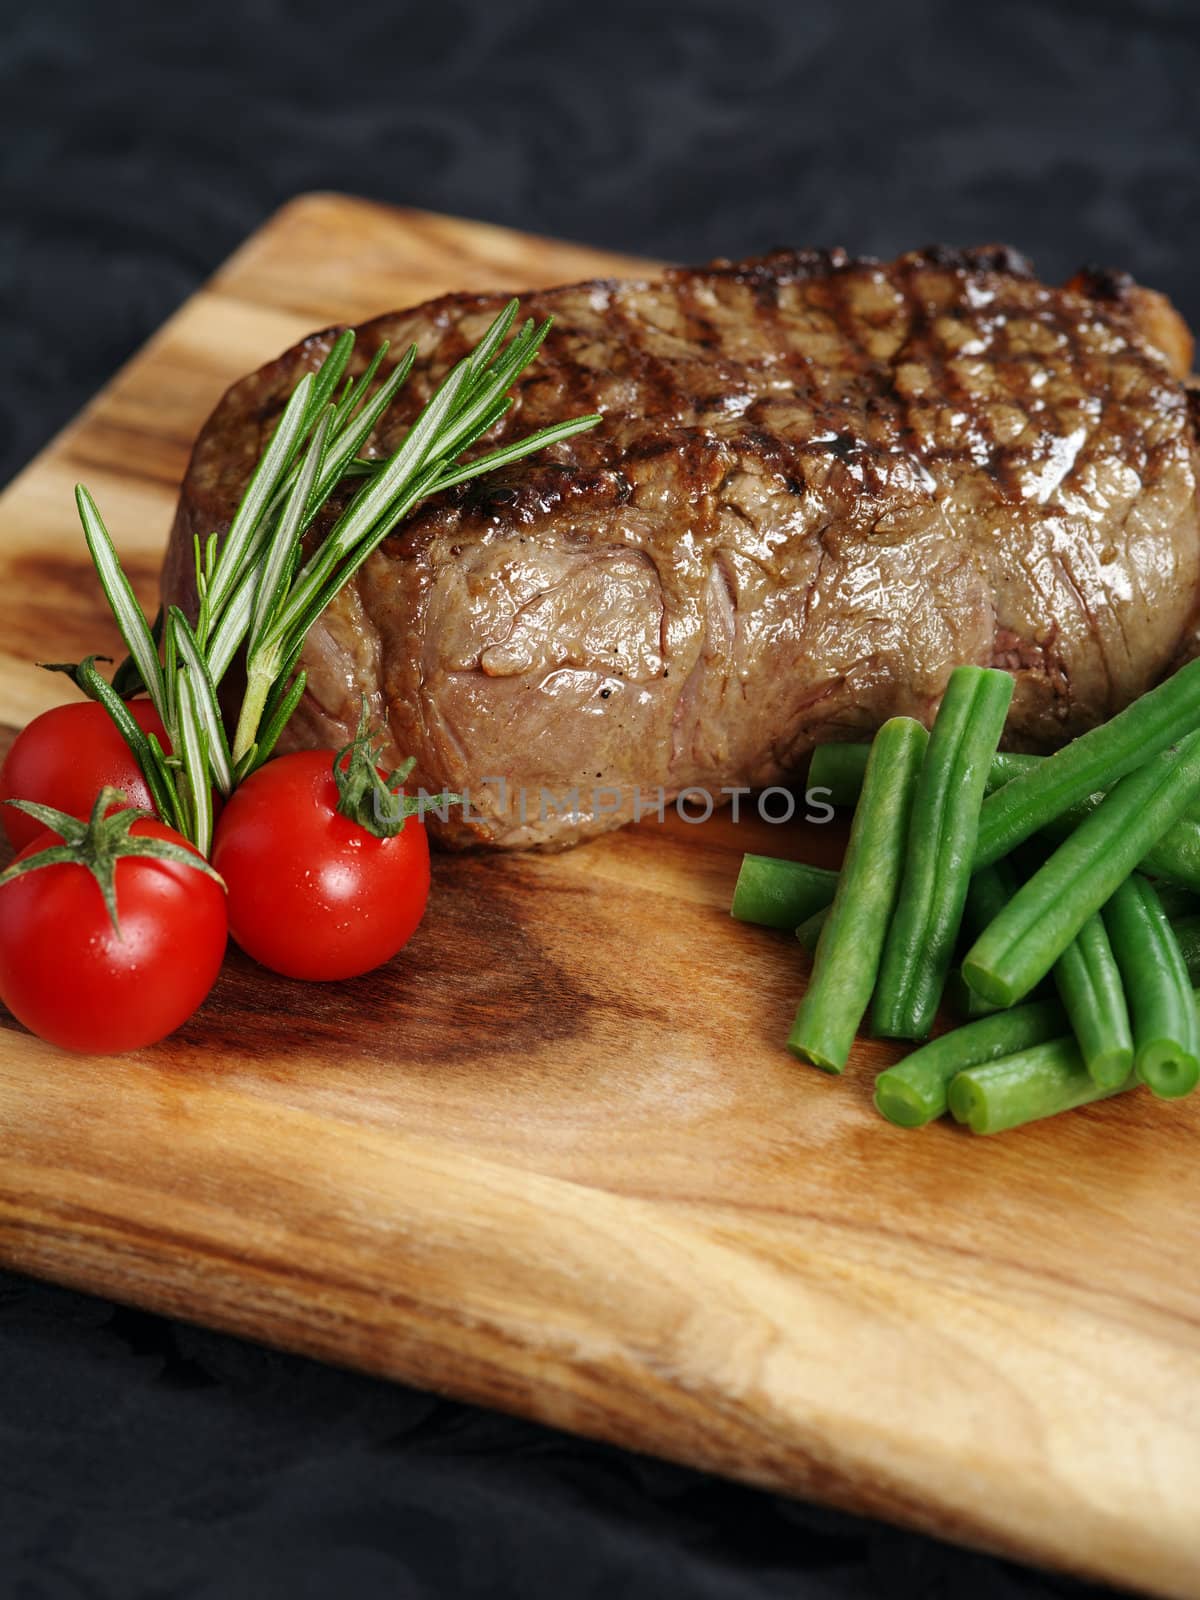 Steak dinner by sumners